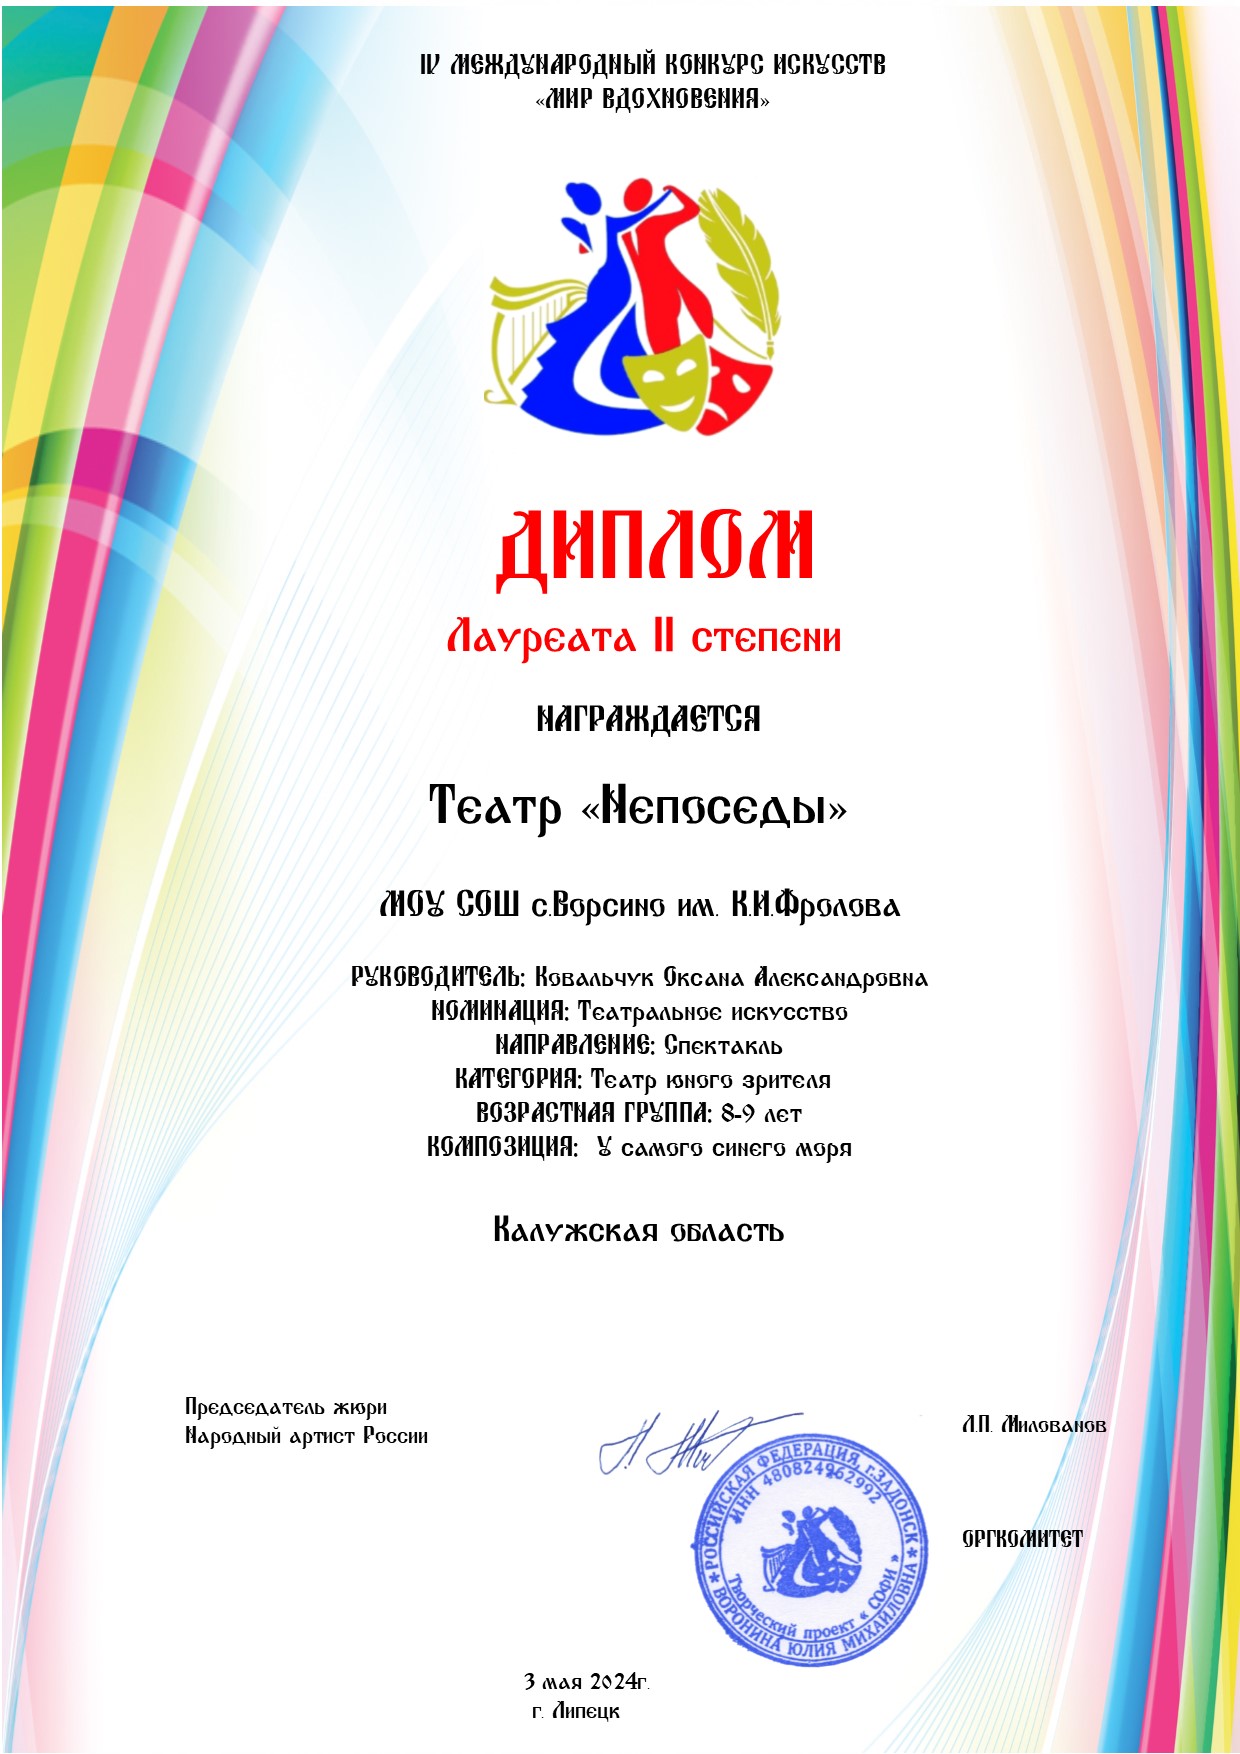 Диплом лауреата 2 степени IV Международного конкурса искусств «МИР ВДОХНОВЕНИЯ» г.Липецк, 3 мая 2024 года